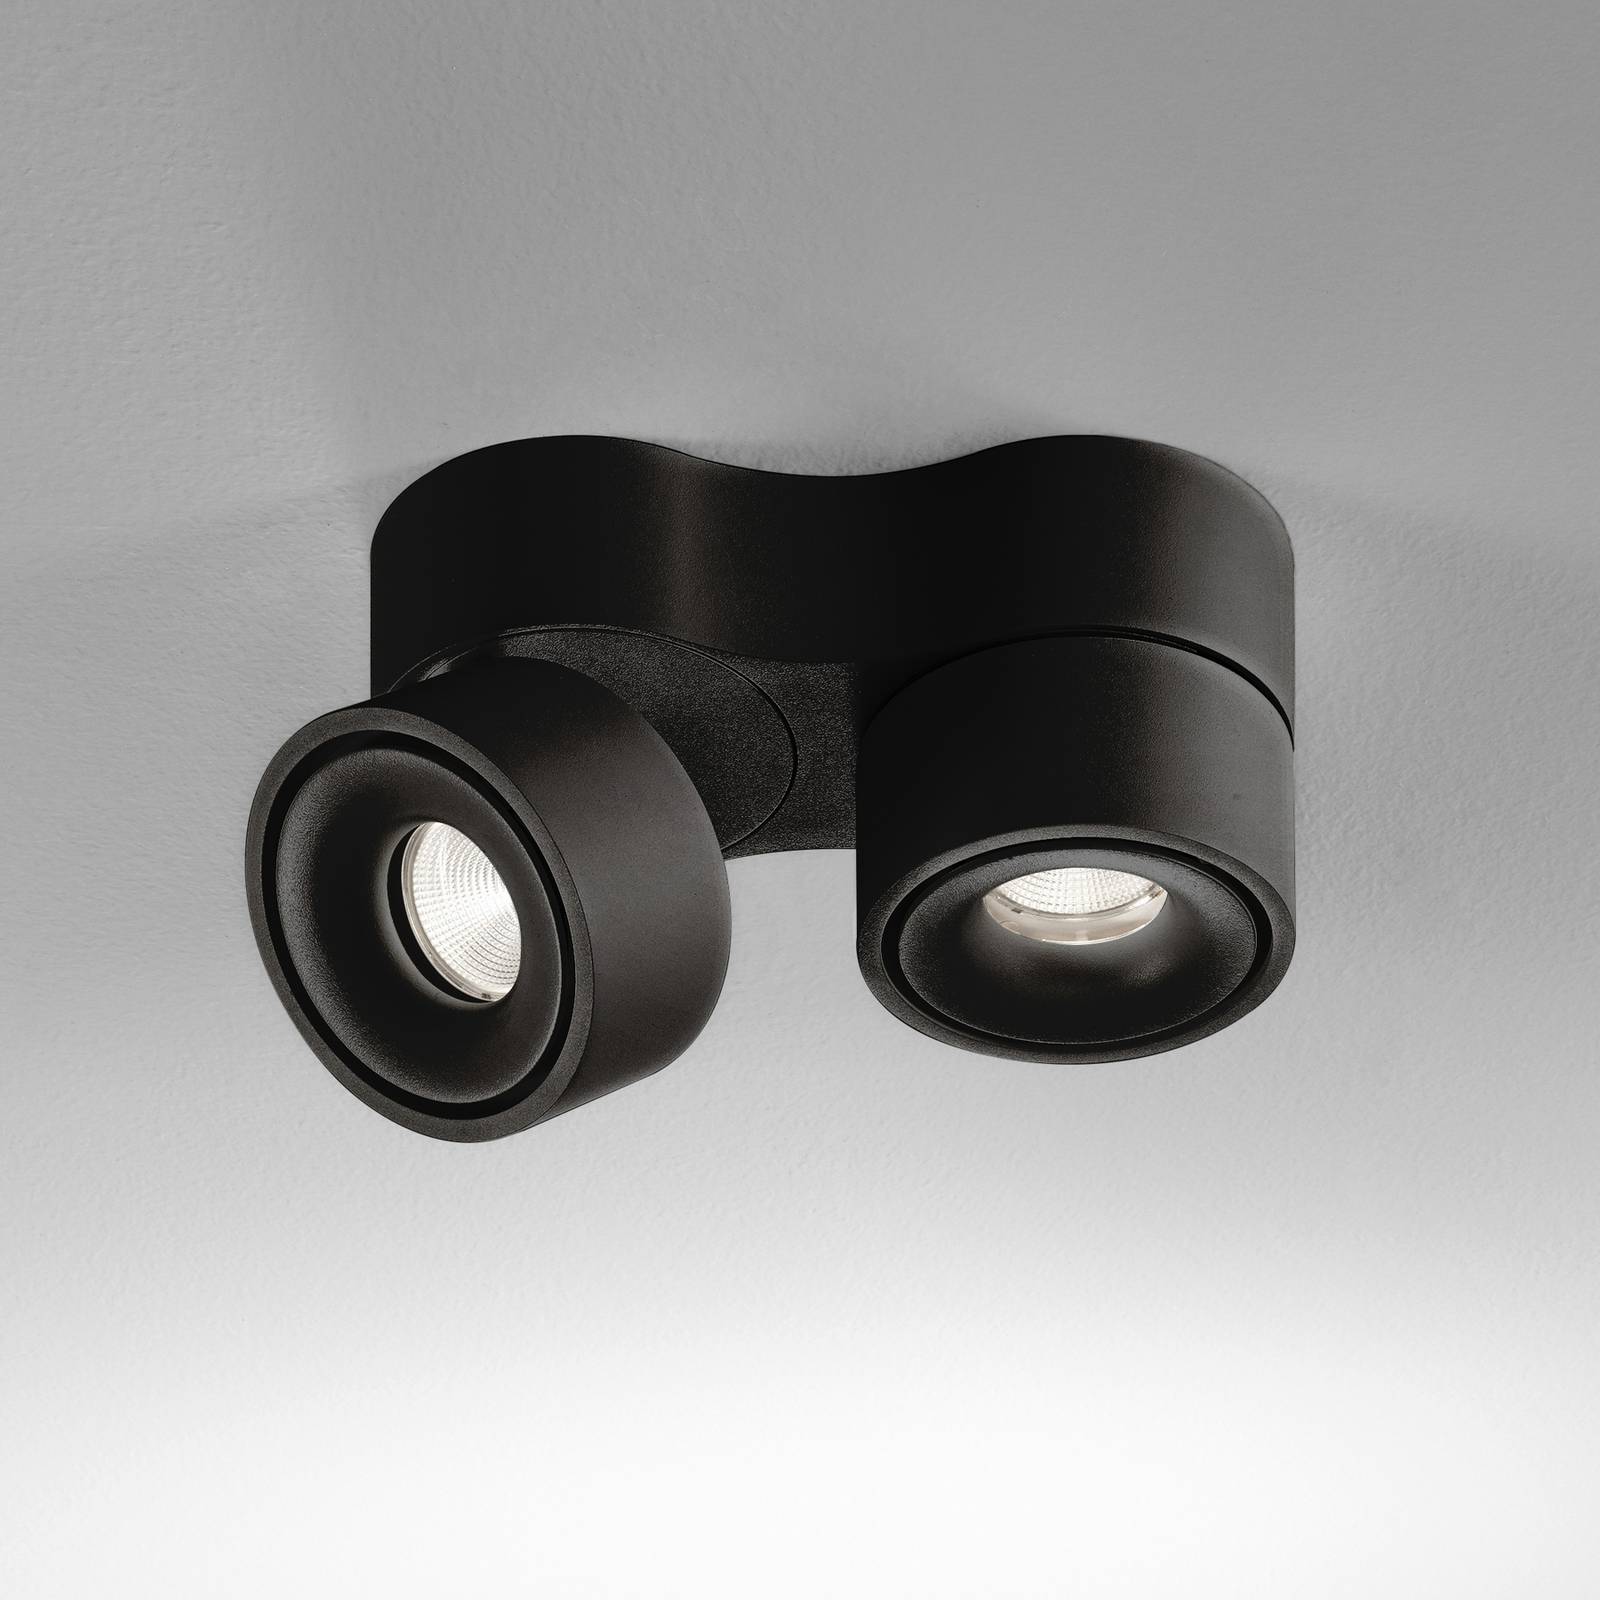 Image of Egger Licht Egger Clippo Duo spot plafond LED, noir, 2 700 K 